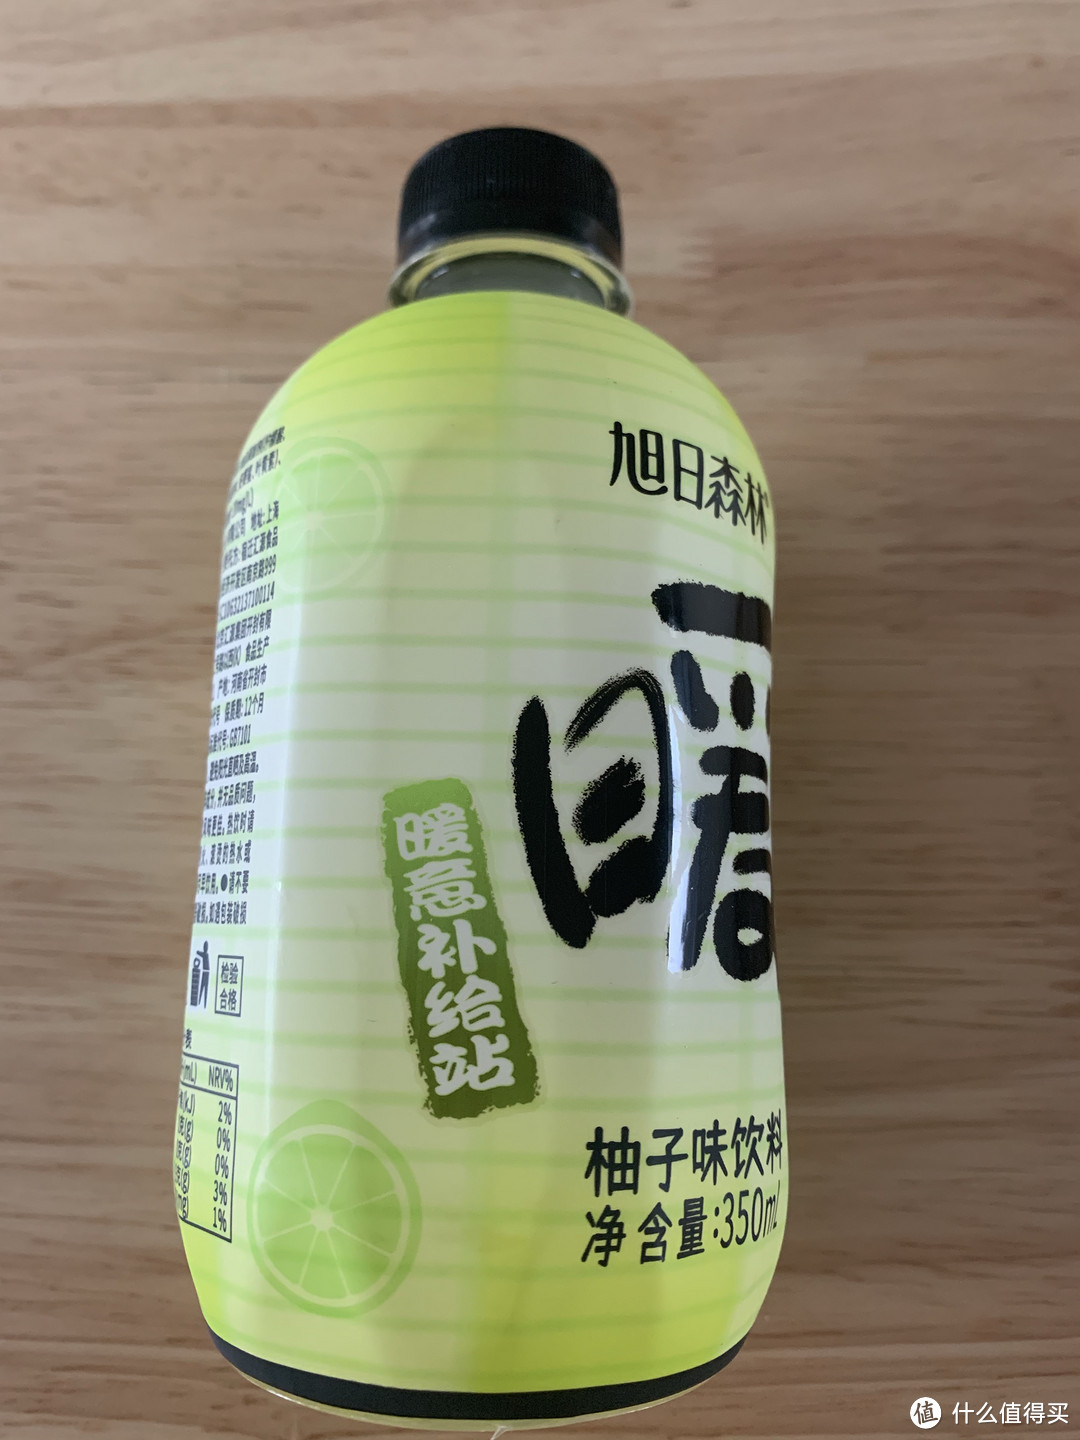 旭日森林柚子汁饮料里面真的有柚子汁